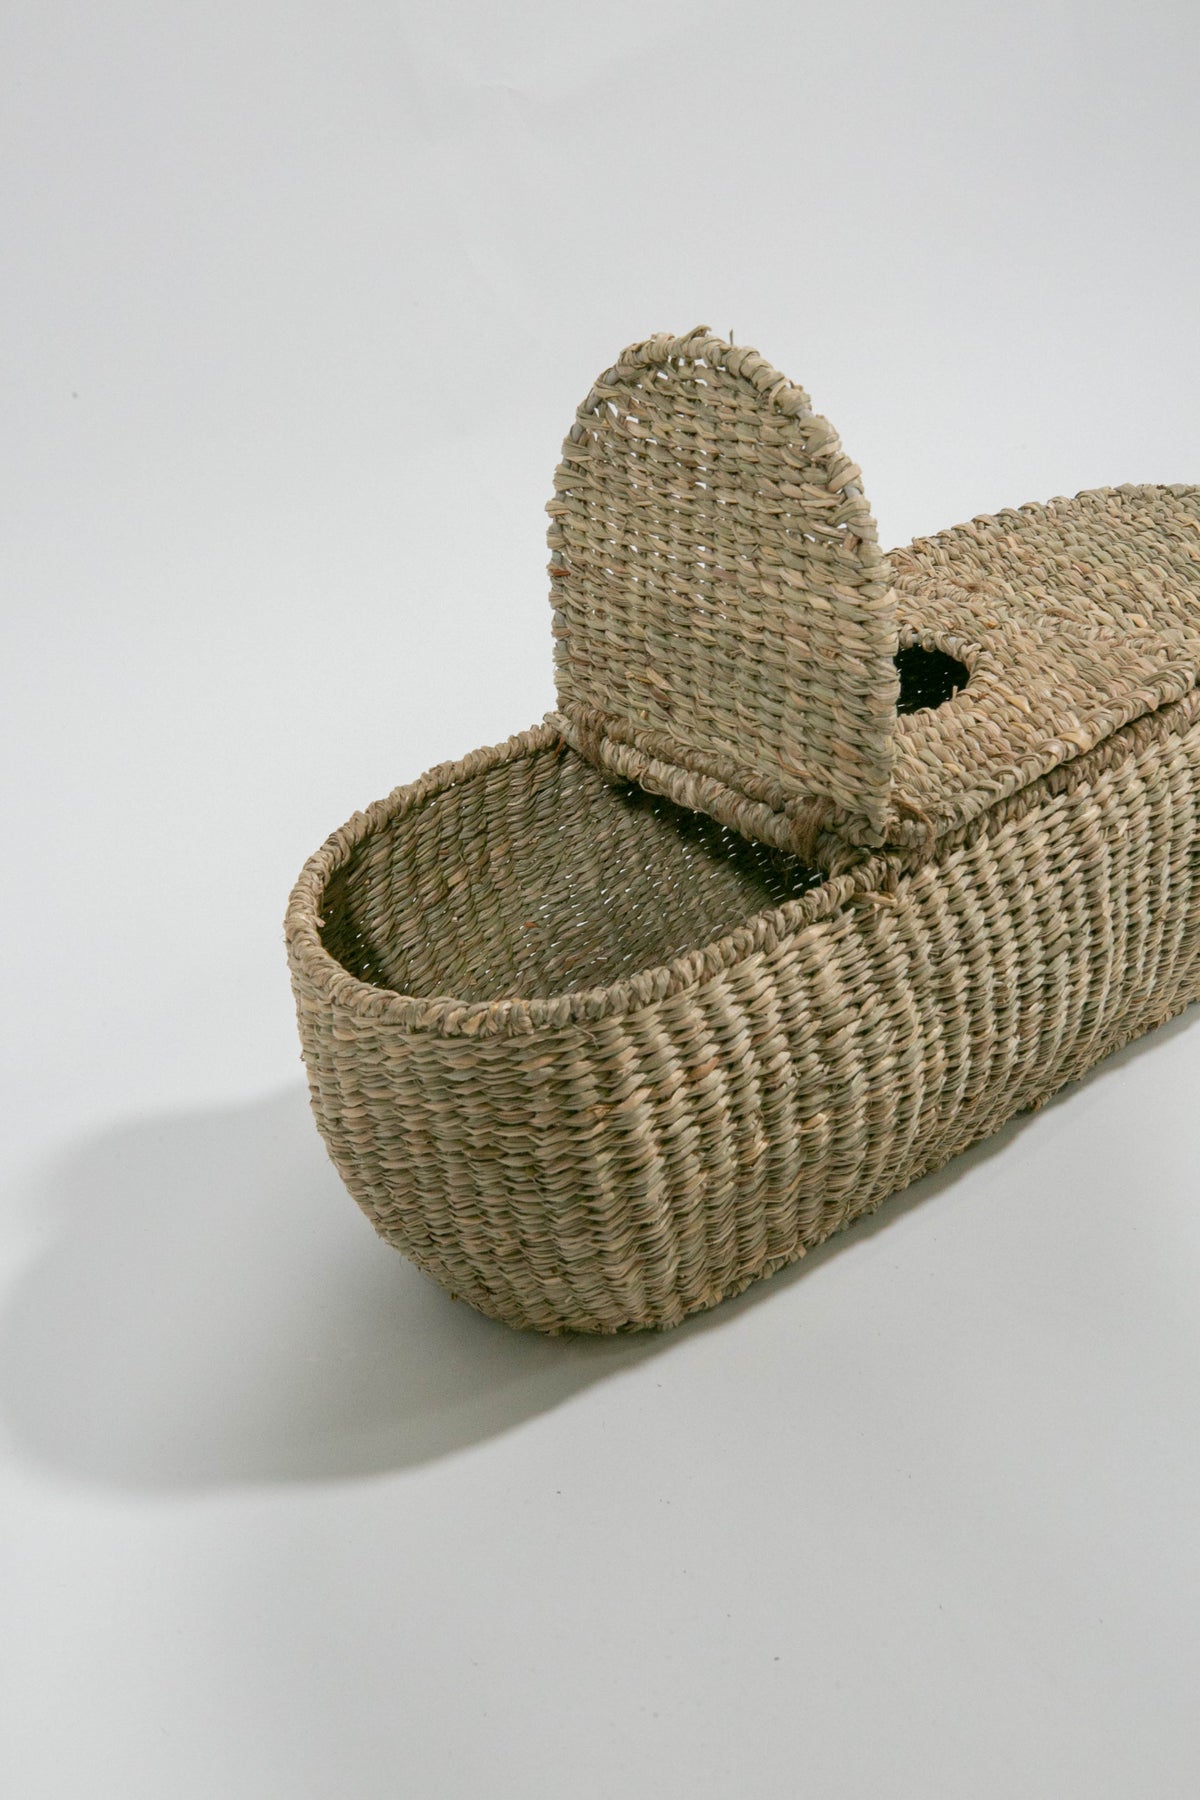 Seagrass Tissue Basket